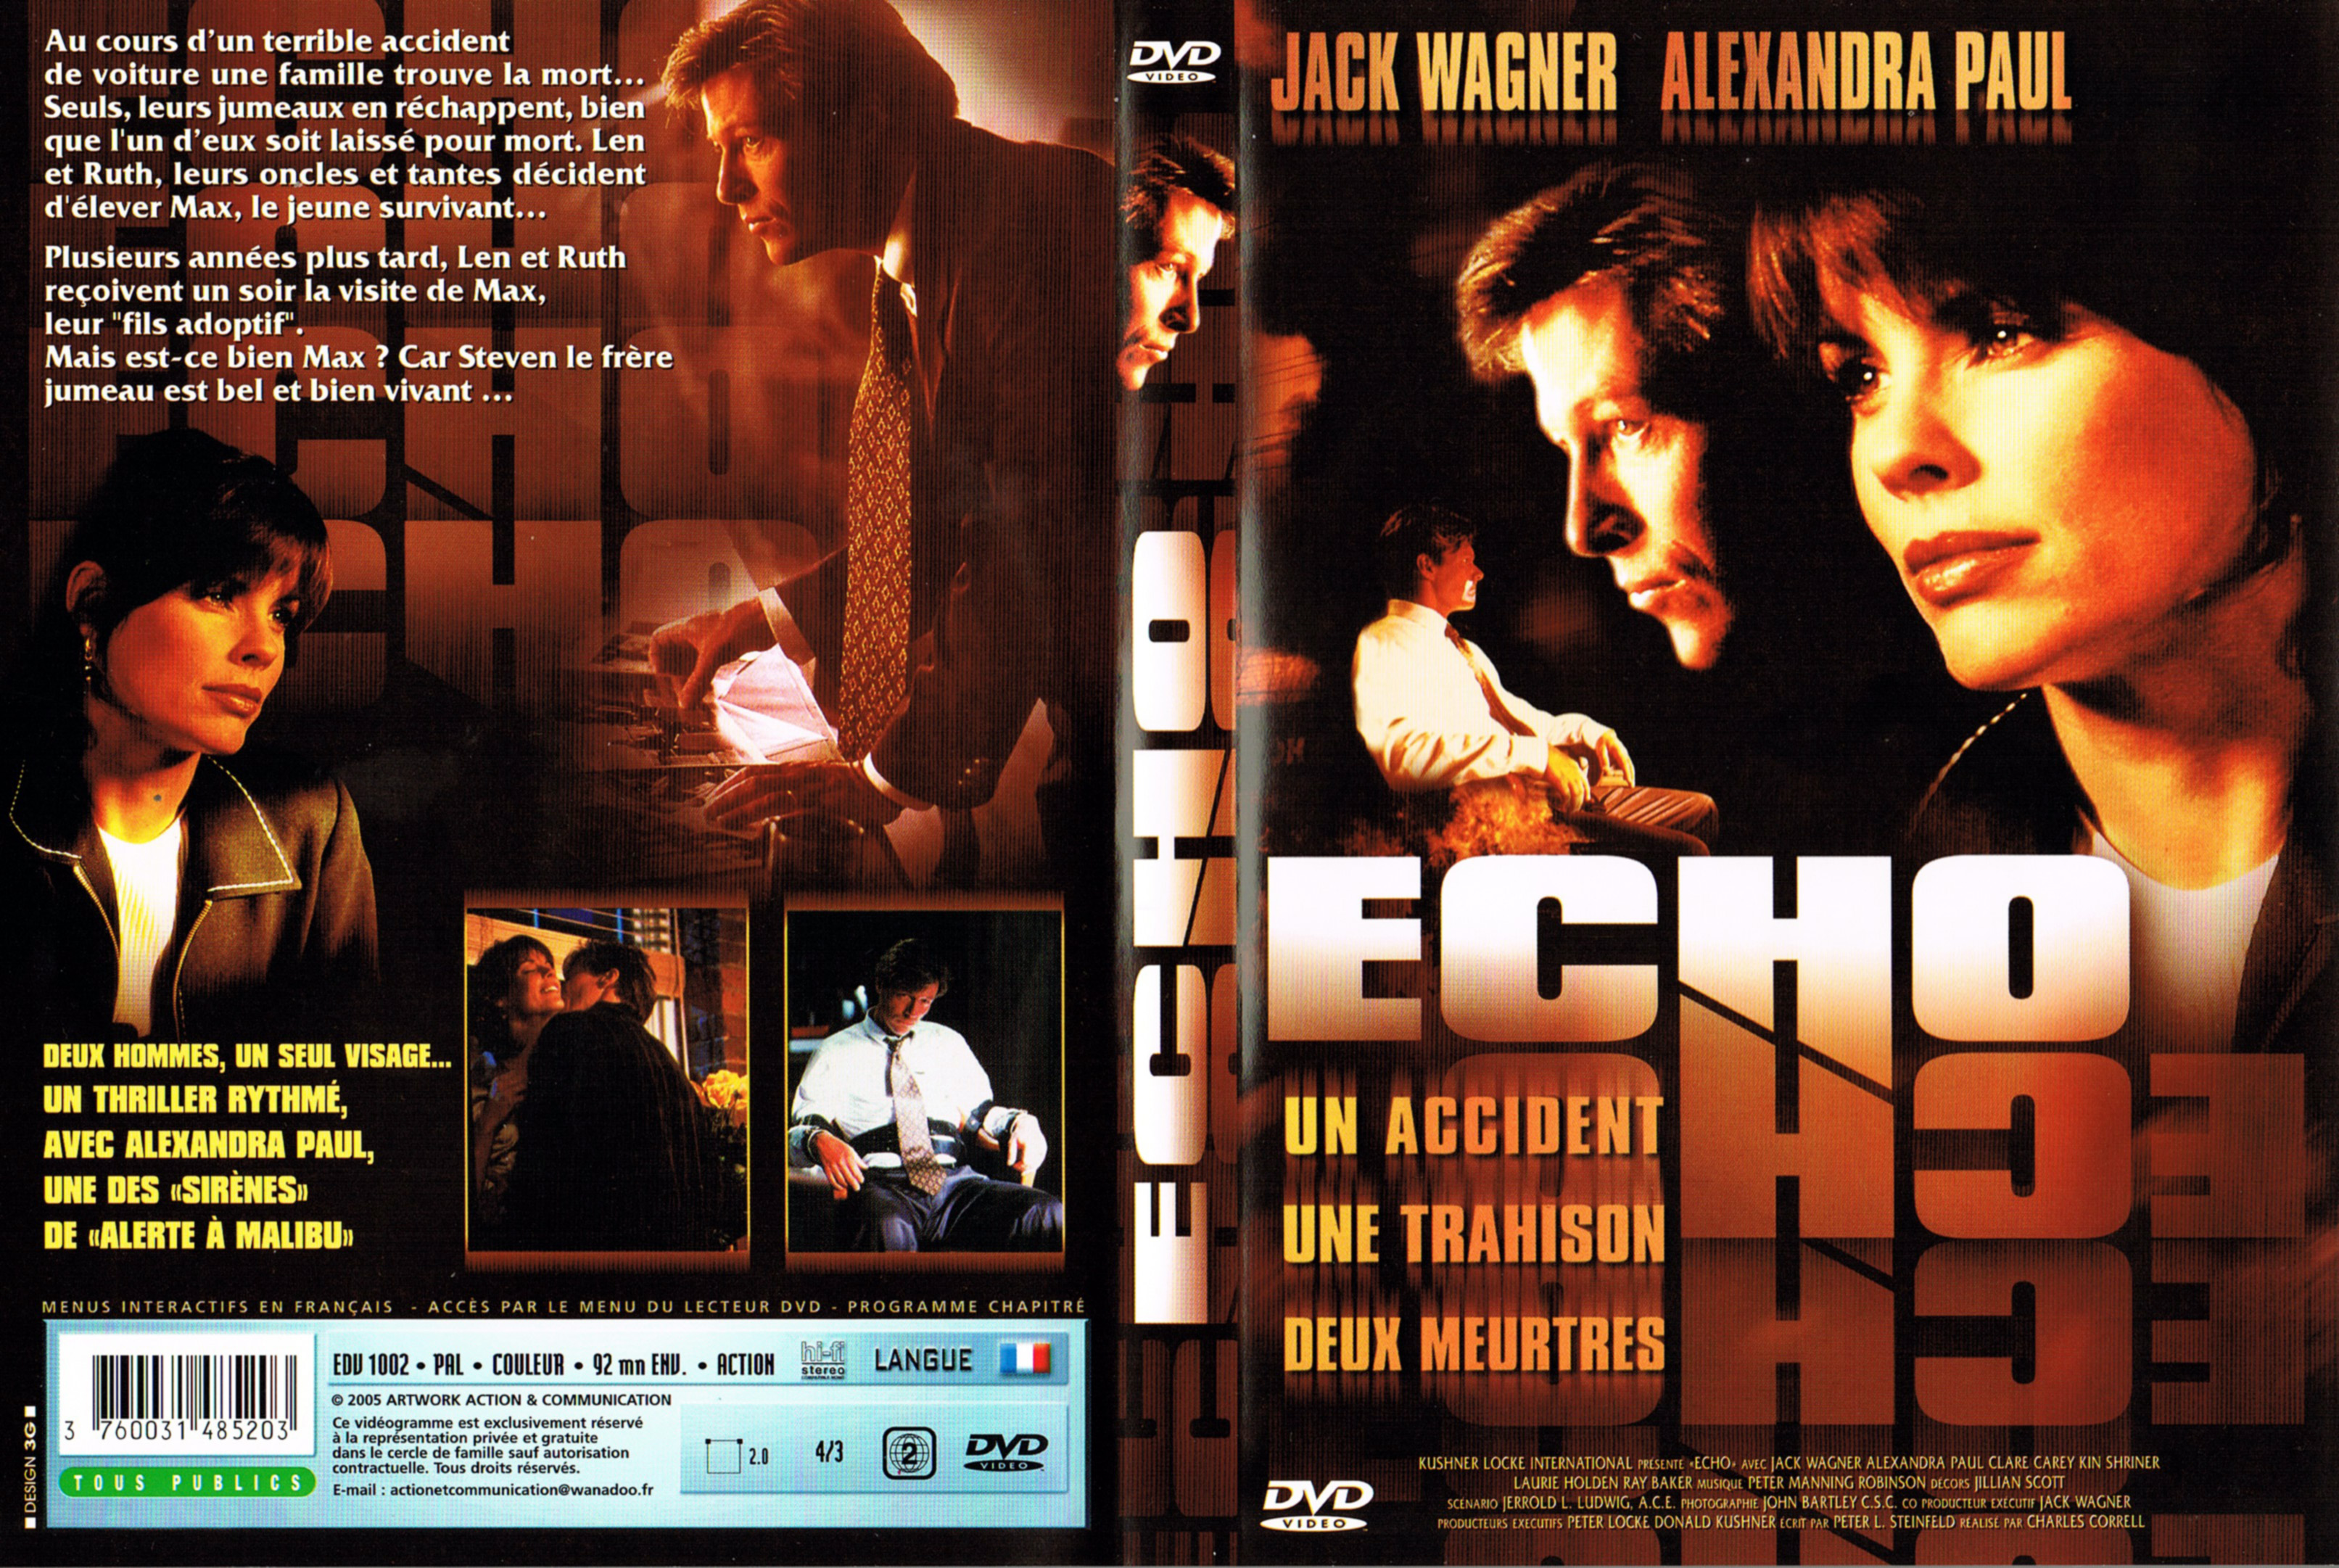 Jaquette DVD Echo